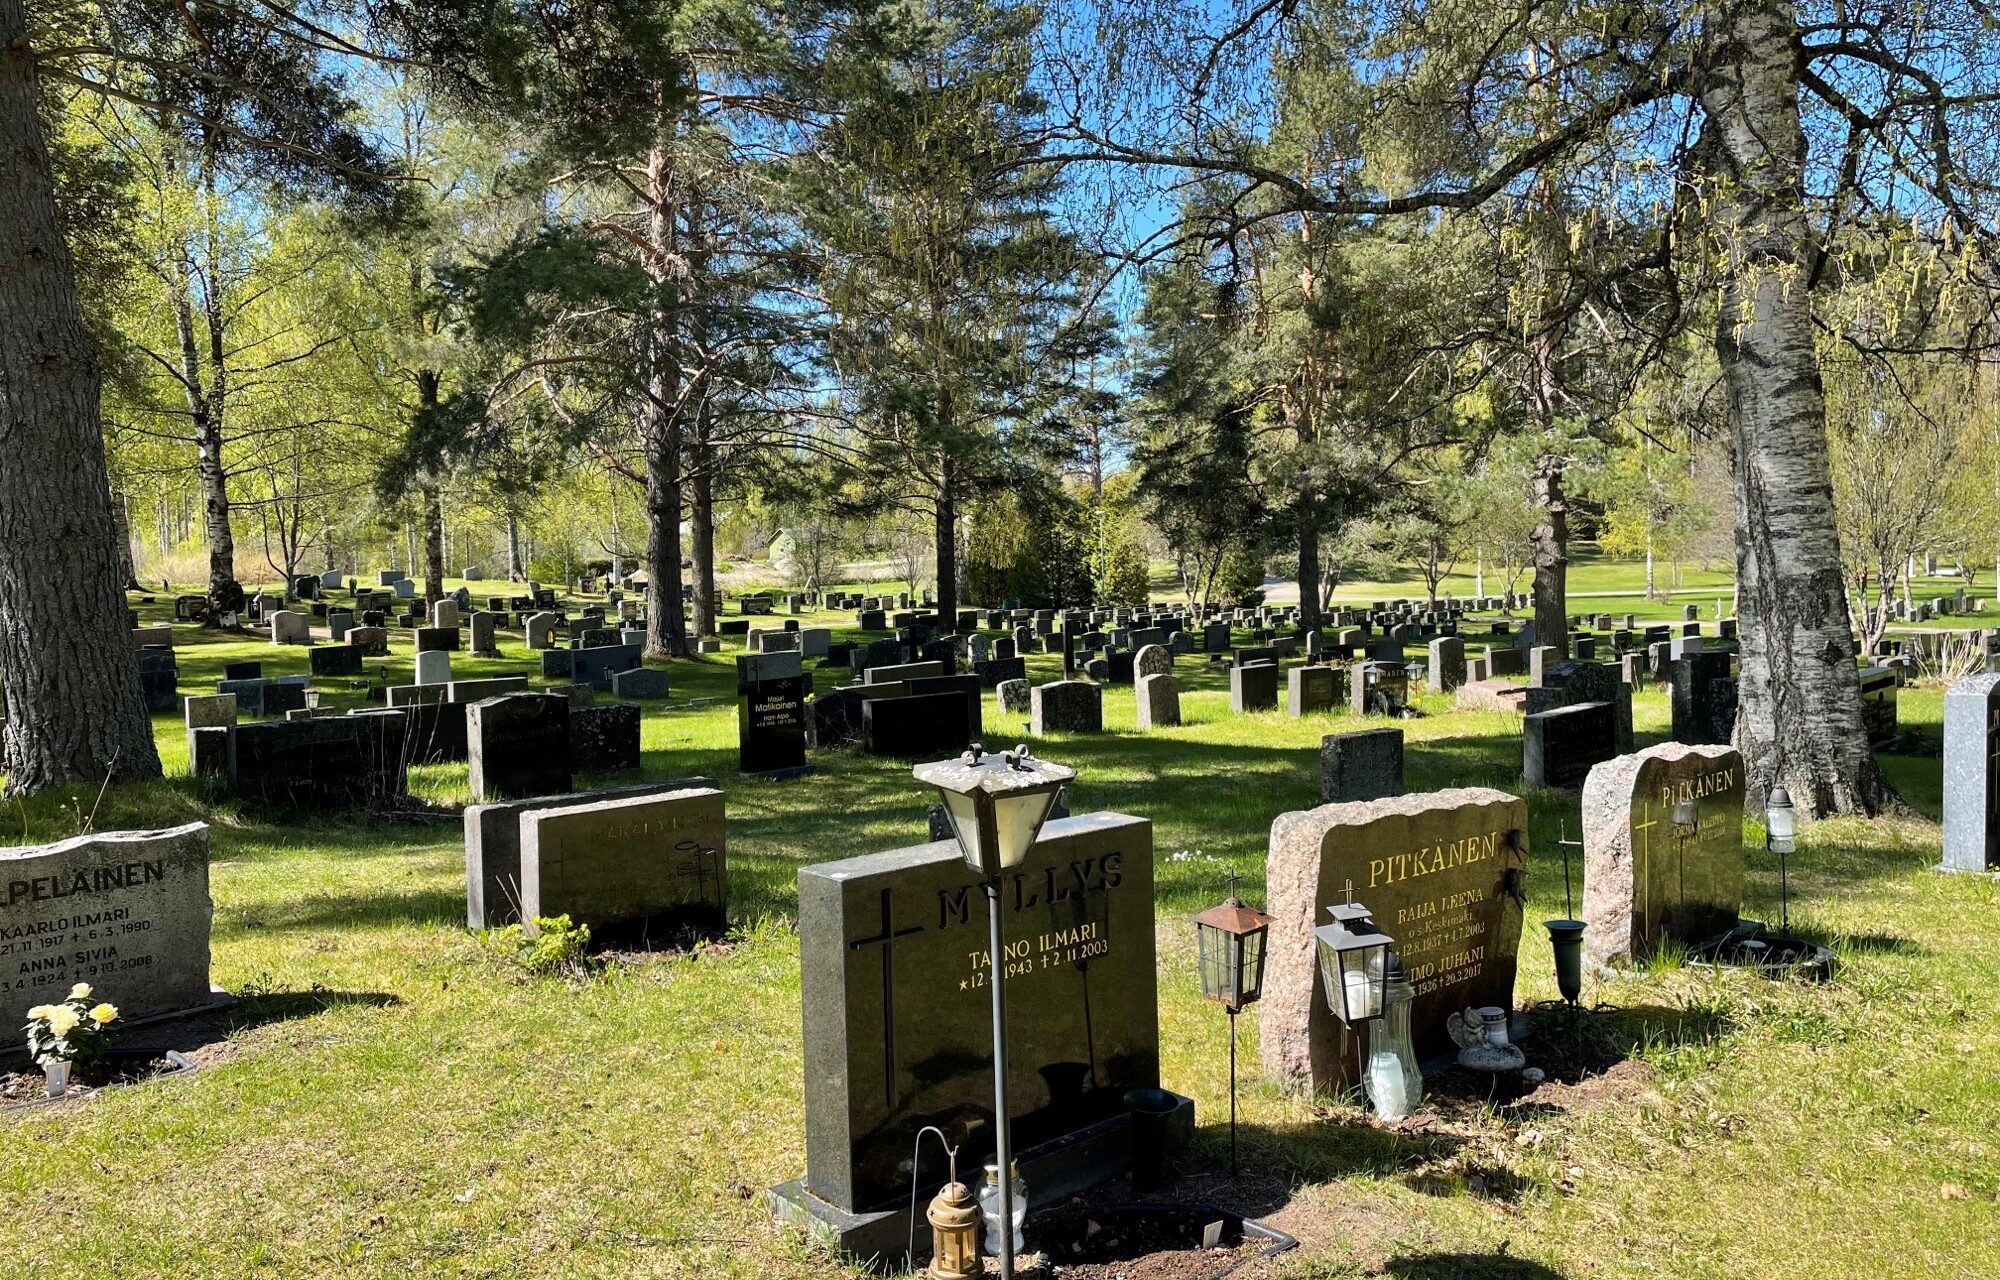 25th Cemeteries Colloquium in York, UK